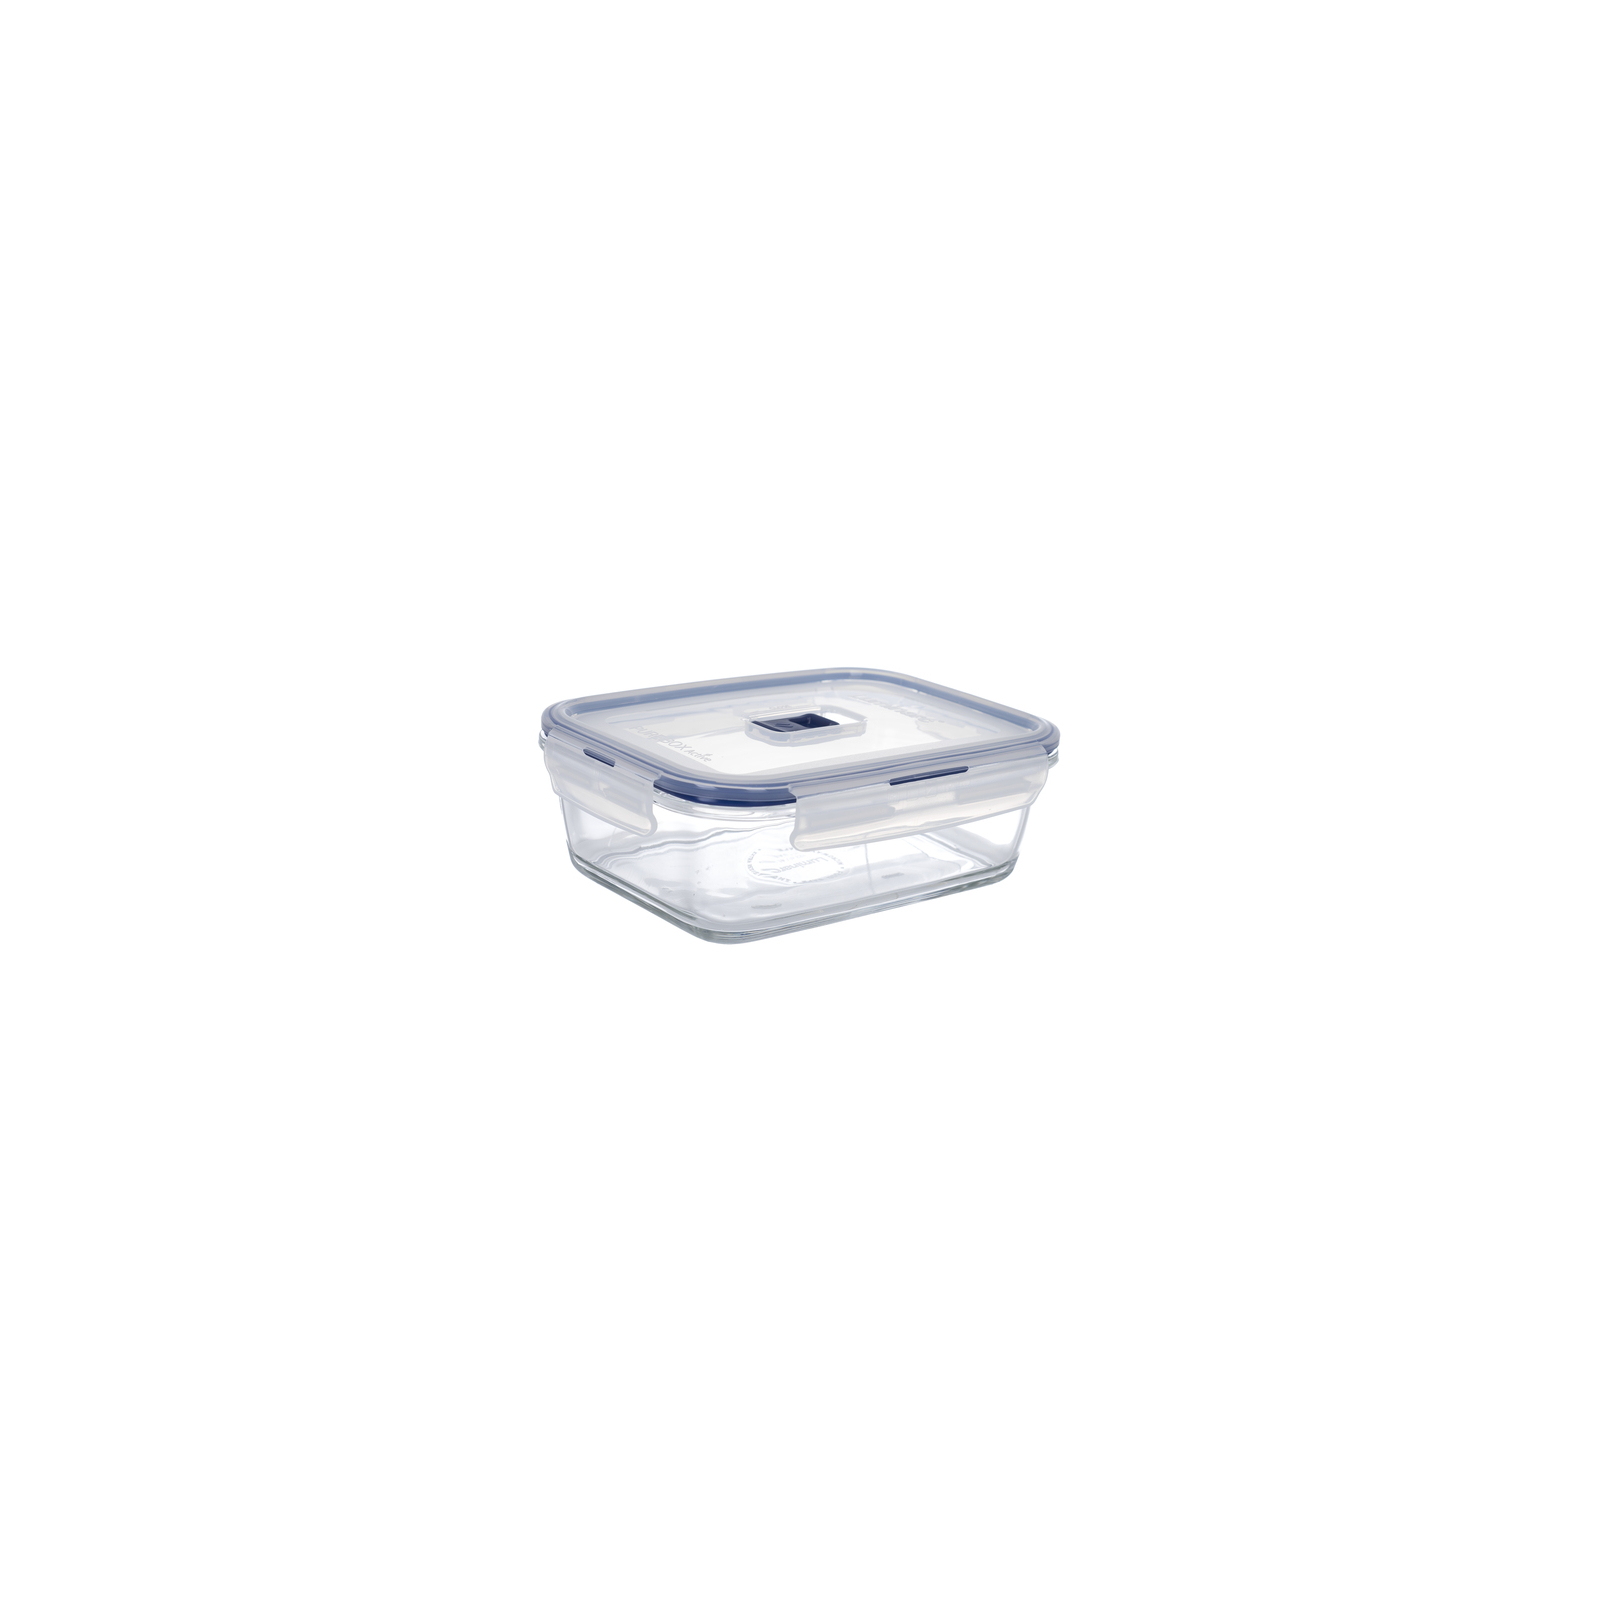 Пищевой контейнер Luminarc Pure Box Active набор 3шт прямоуг. 380мл/820мл/1220мл + сумк (P4129) изображение 2